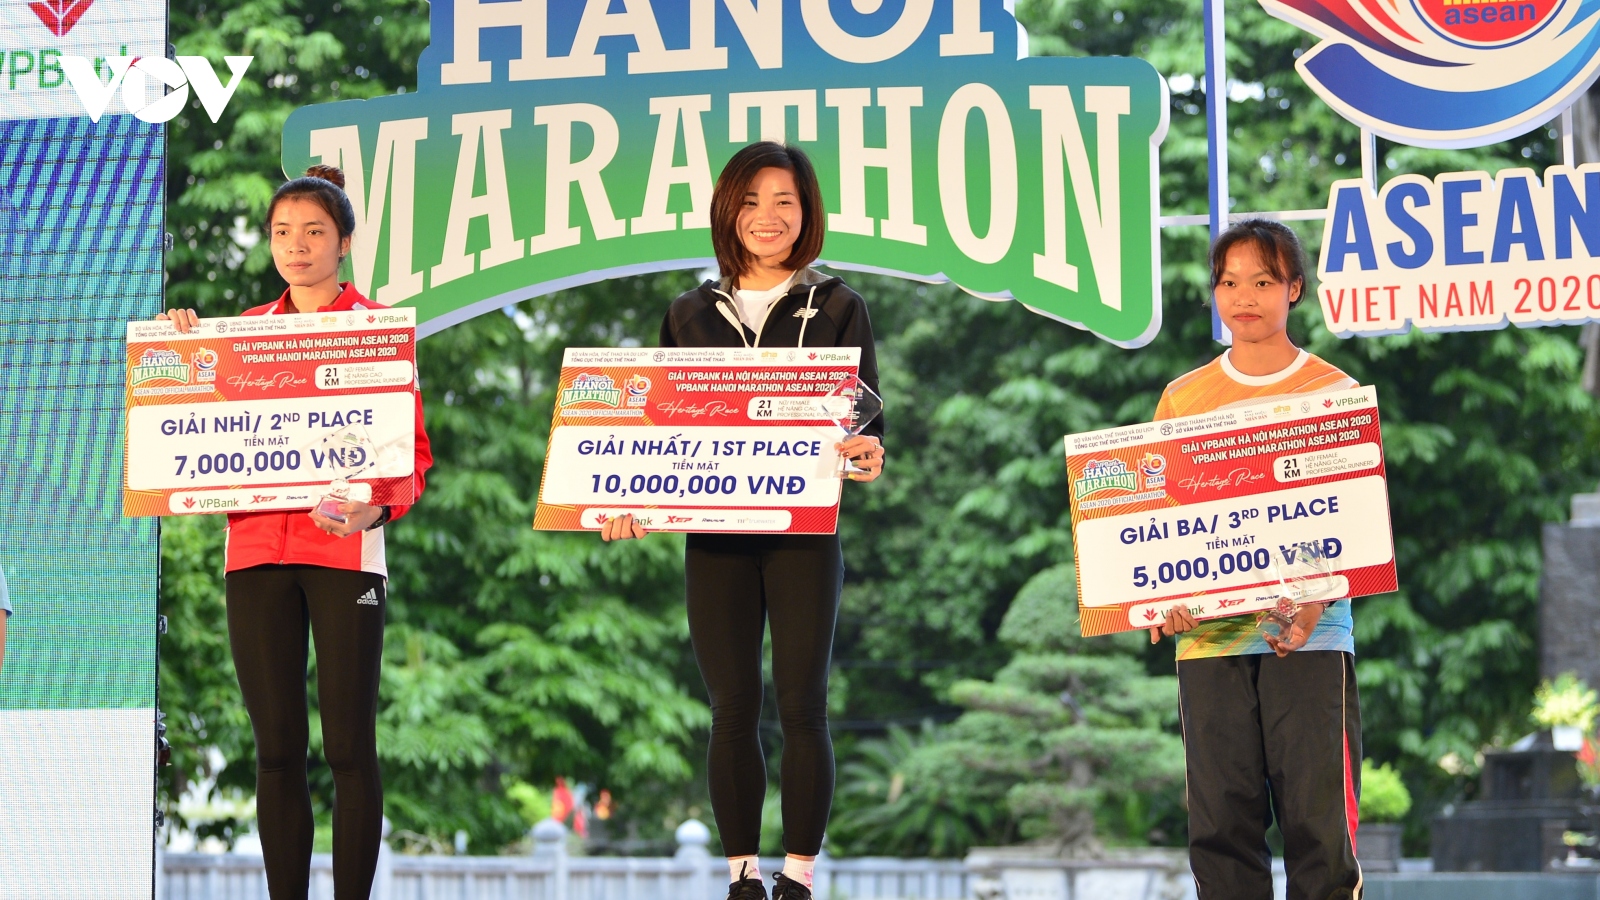 “Cô gái vàng” Nguyễn Thị Oanh không có đối thủ ở Hanoi Marathon ASEAN 2020